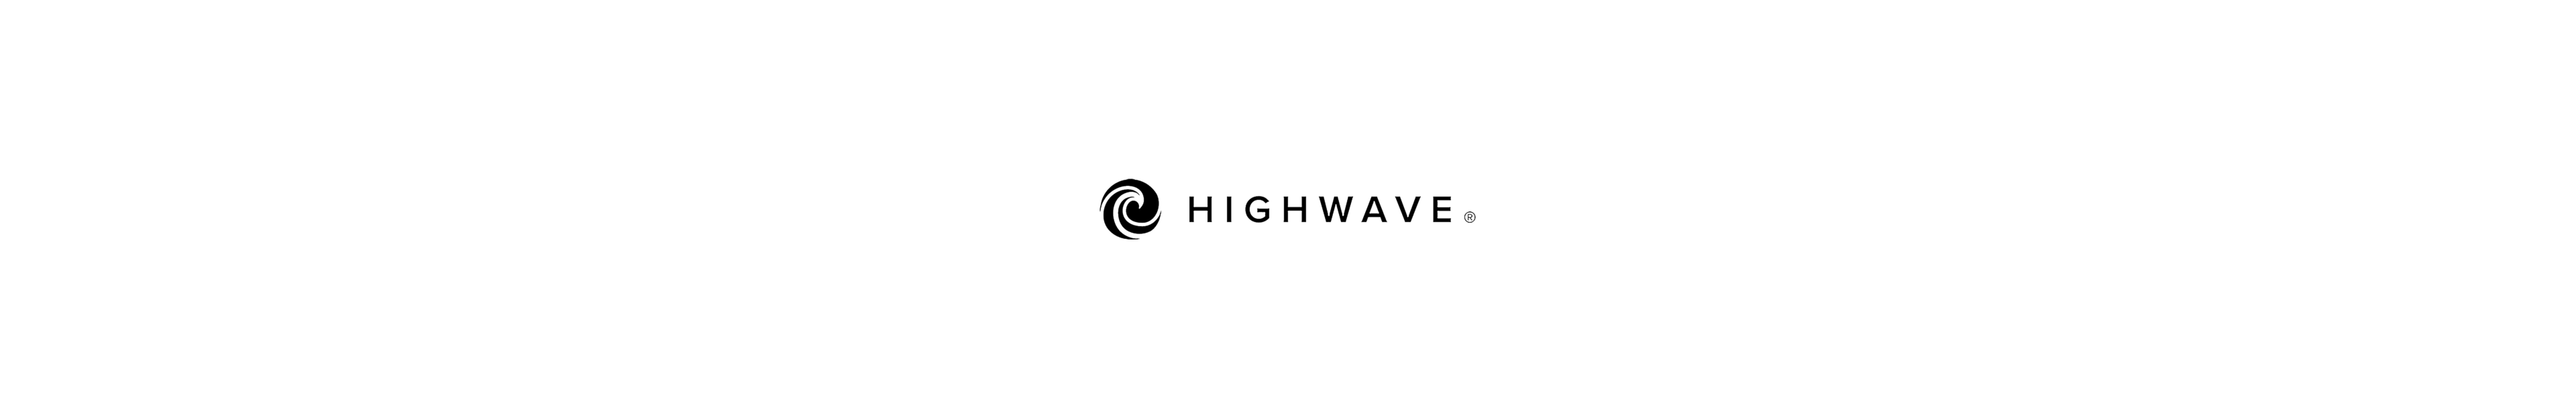 highwave